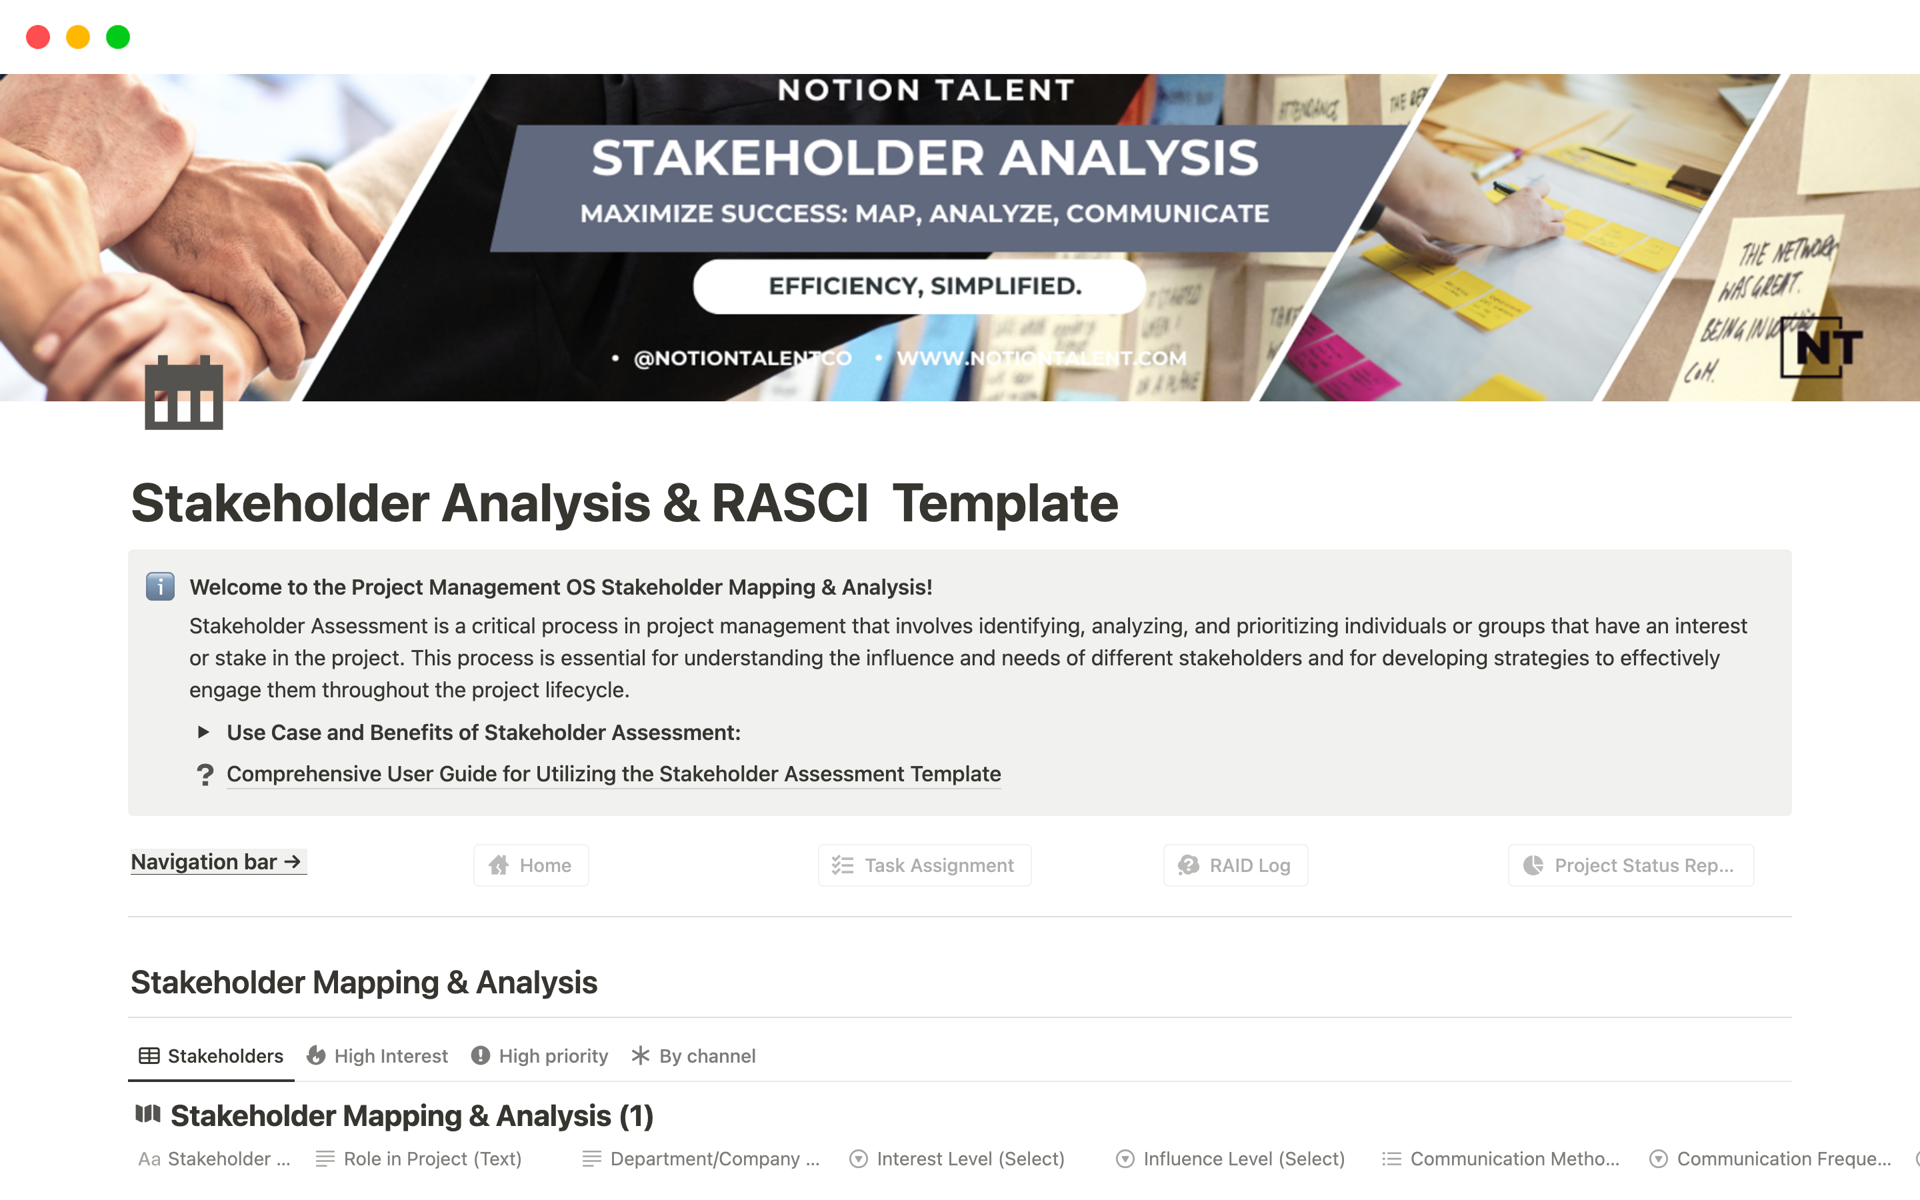 Uma prévia do modelo para Stakeholder Analysis & RASCI